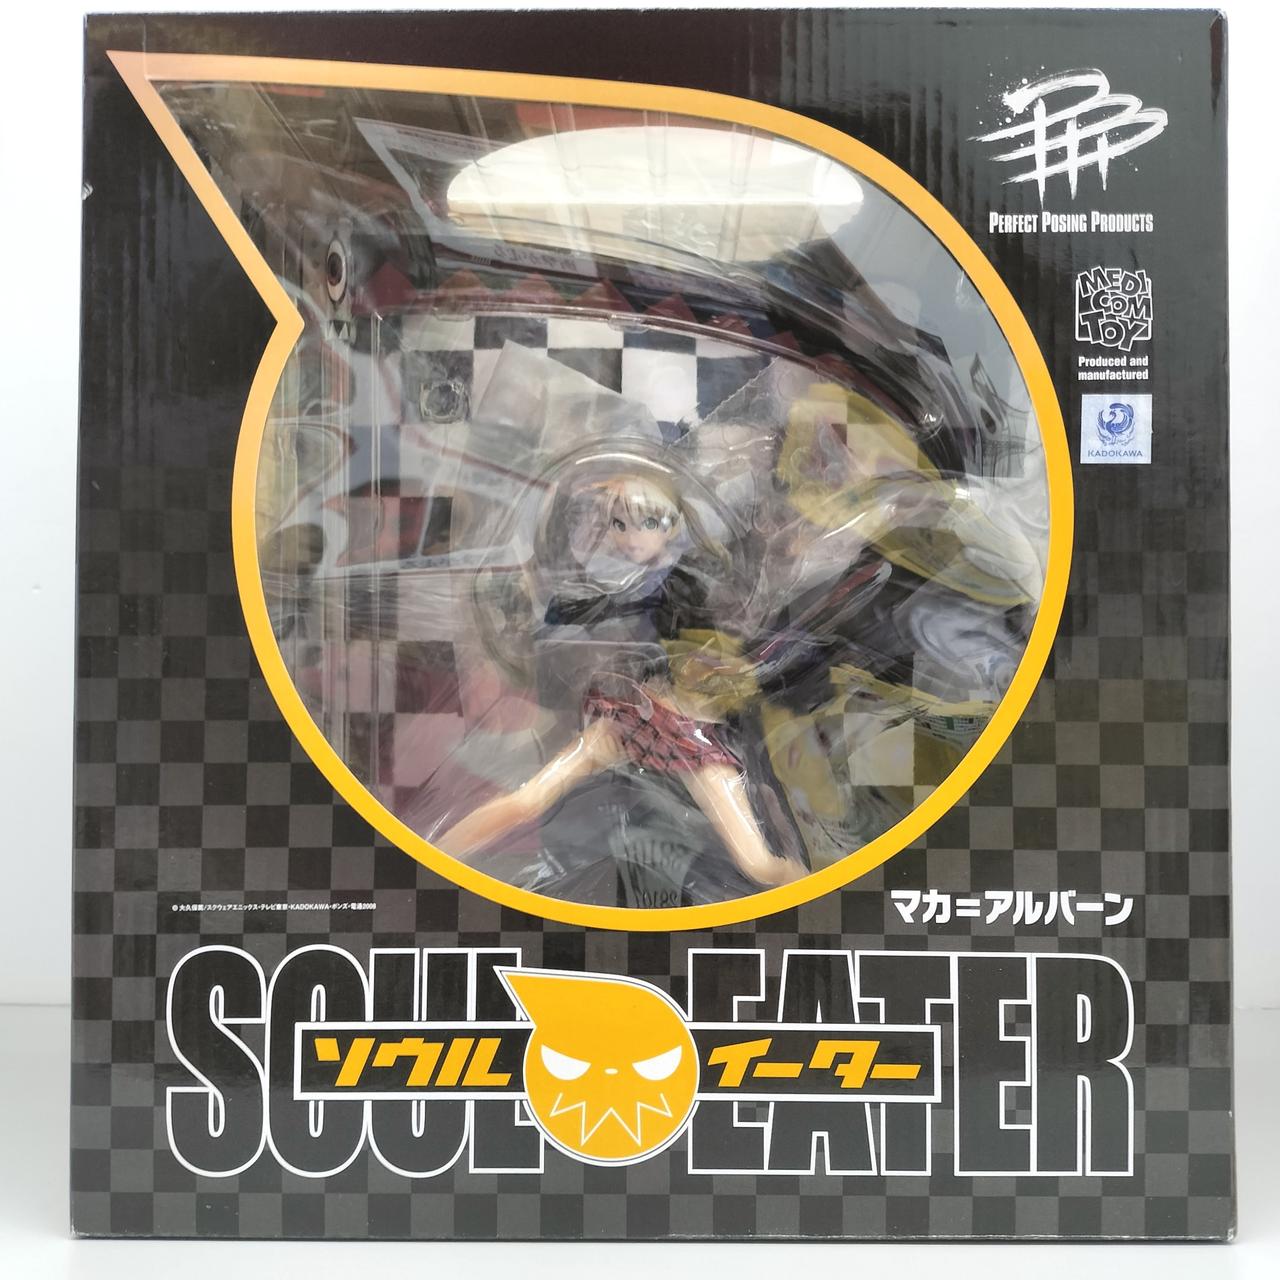 PPP - Soul Eater: Maka Albarn 1/8 Complete Figure